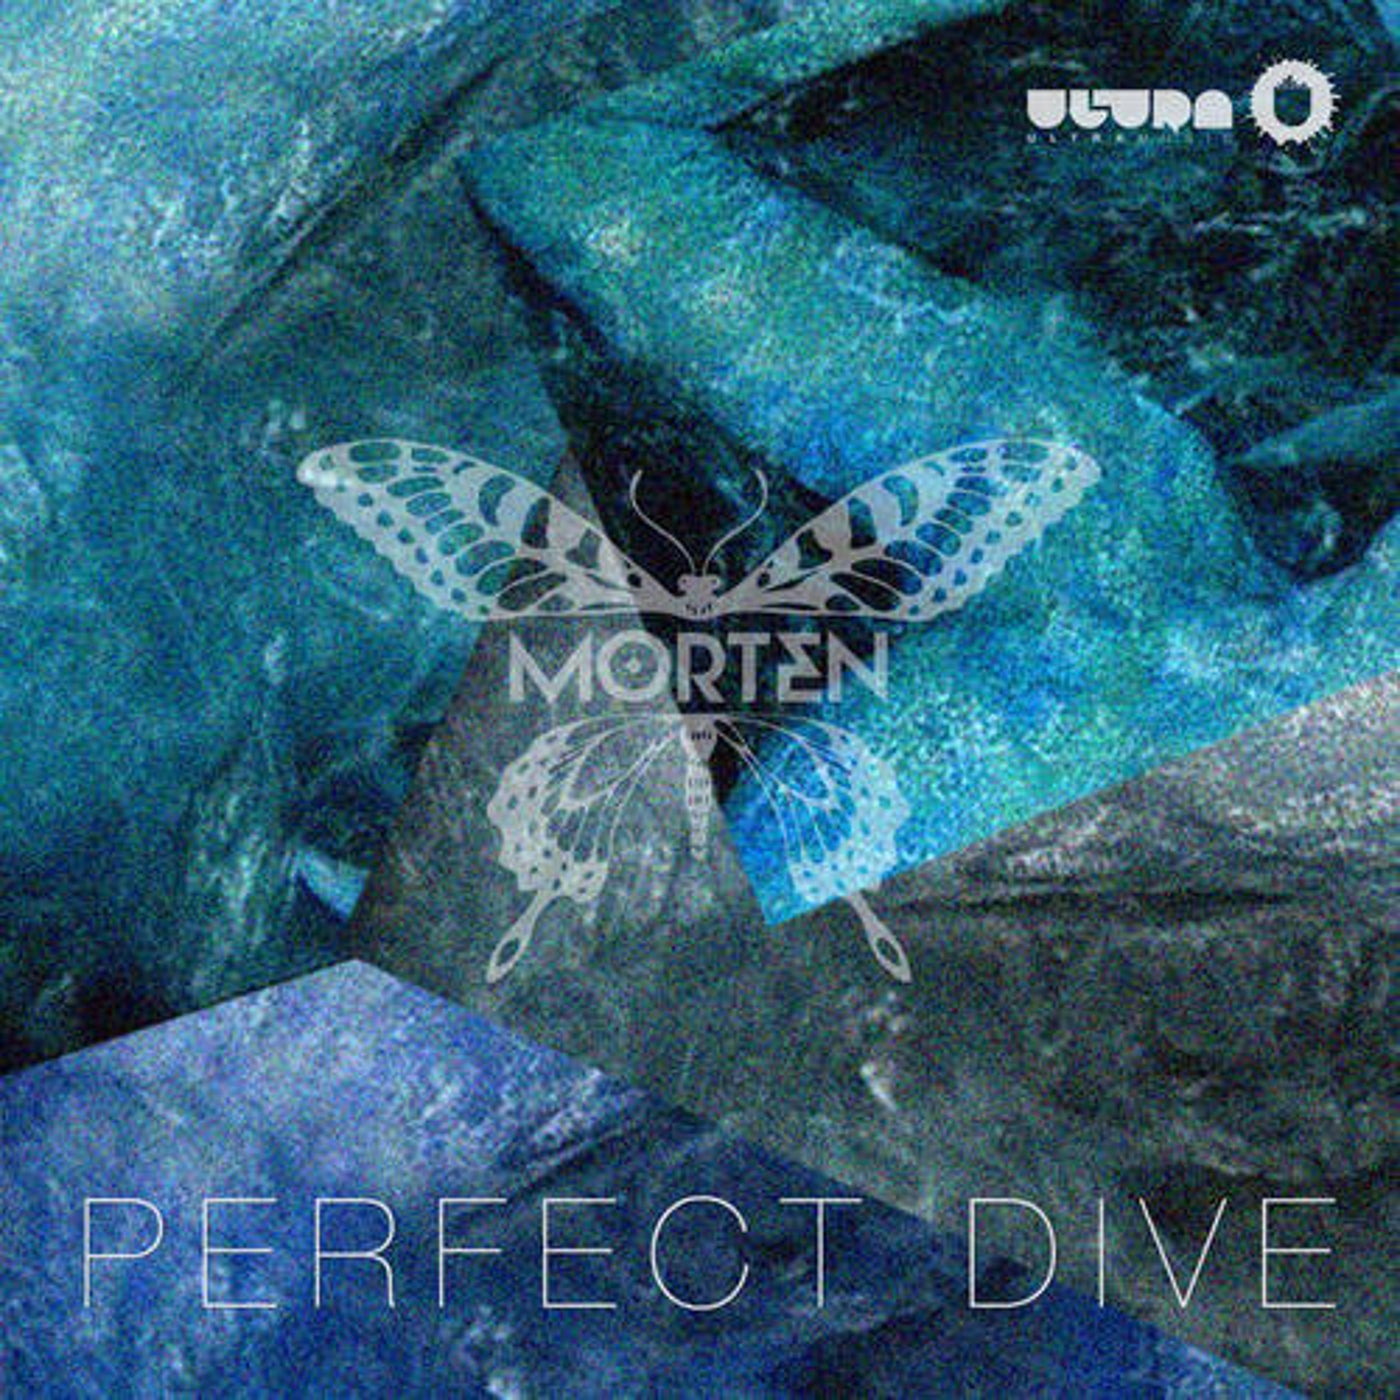 Perfect Dive (Original Mix)